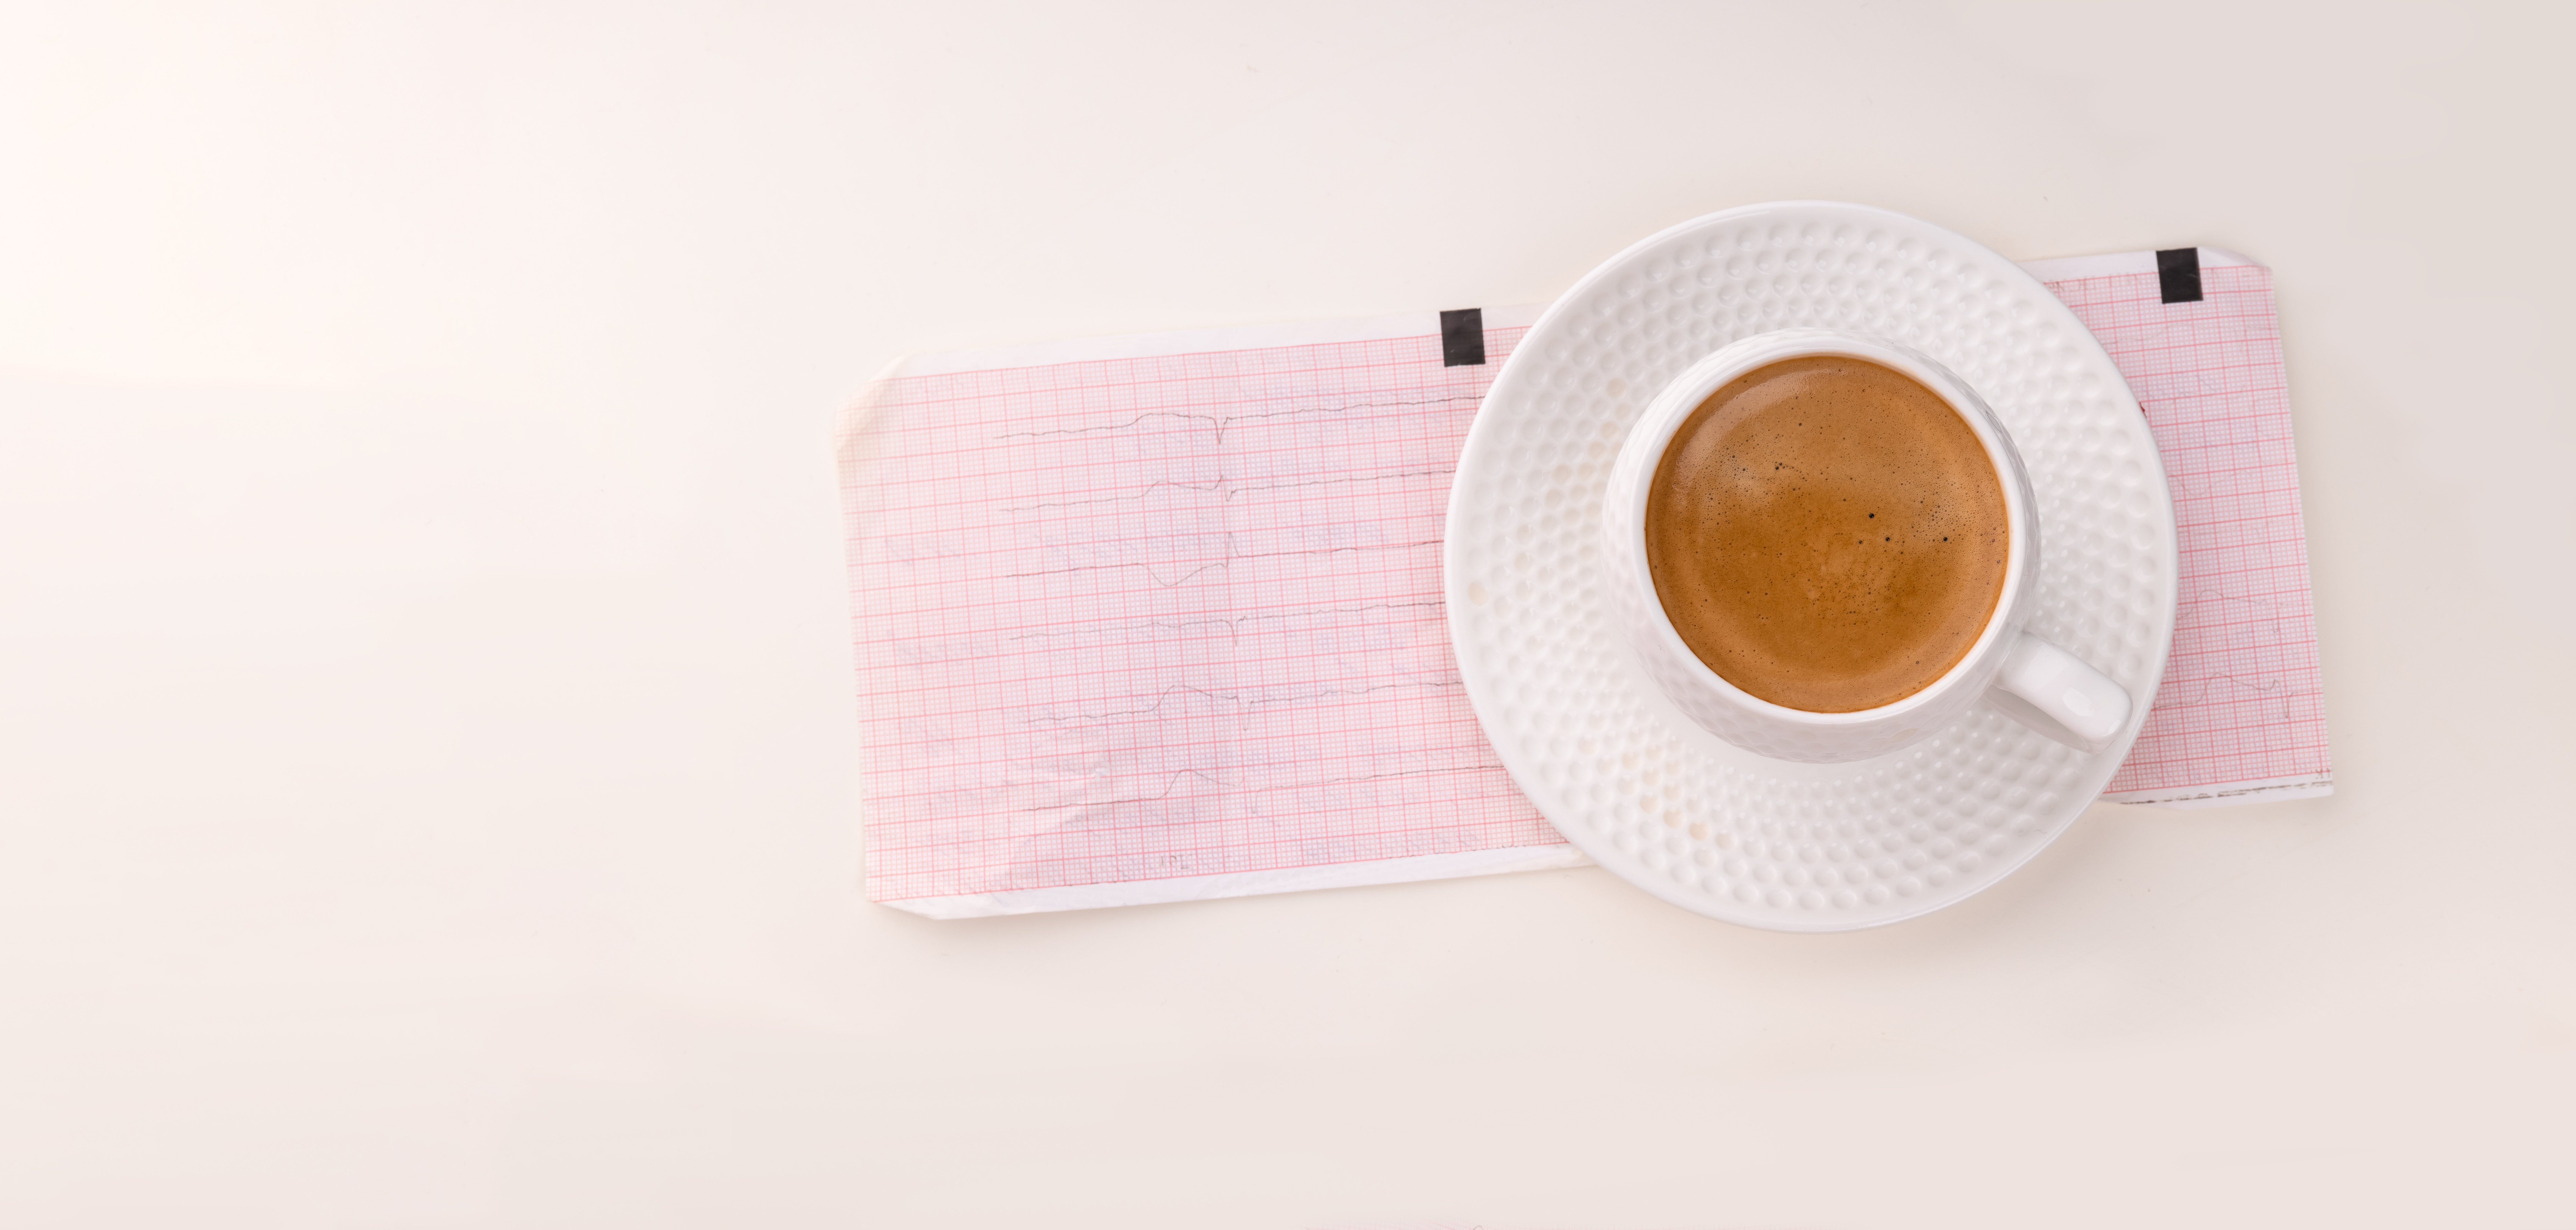 Chez les personnes hypertendues, il suffit de 2 tasses de café par jour pour doubler le risque de mort cardiaque (Visuel Adobe Stock 551834447)